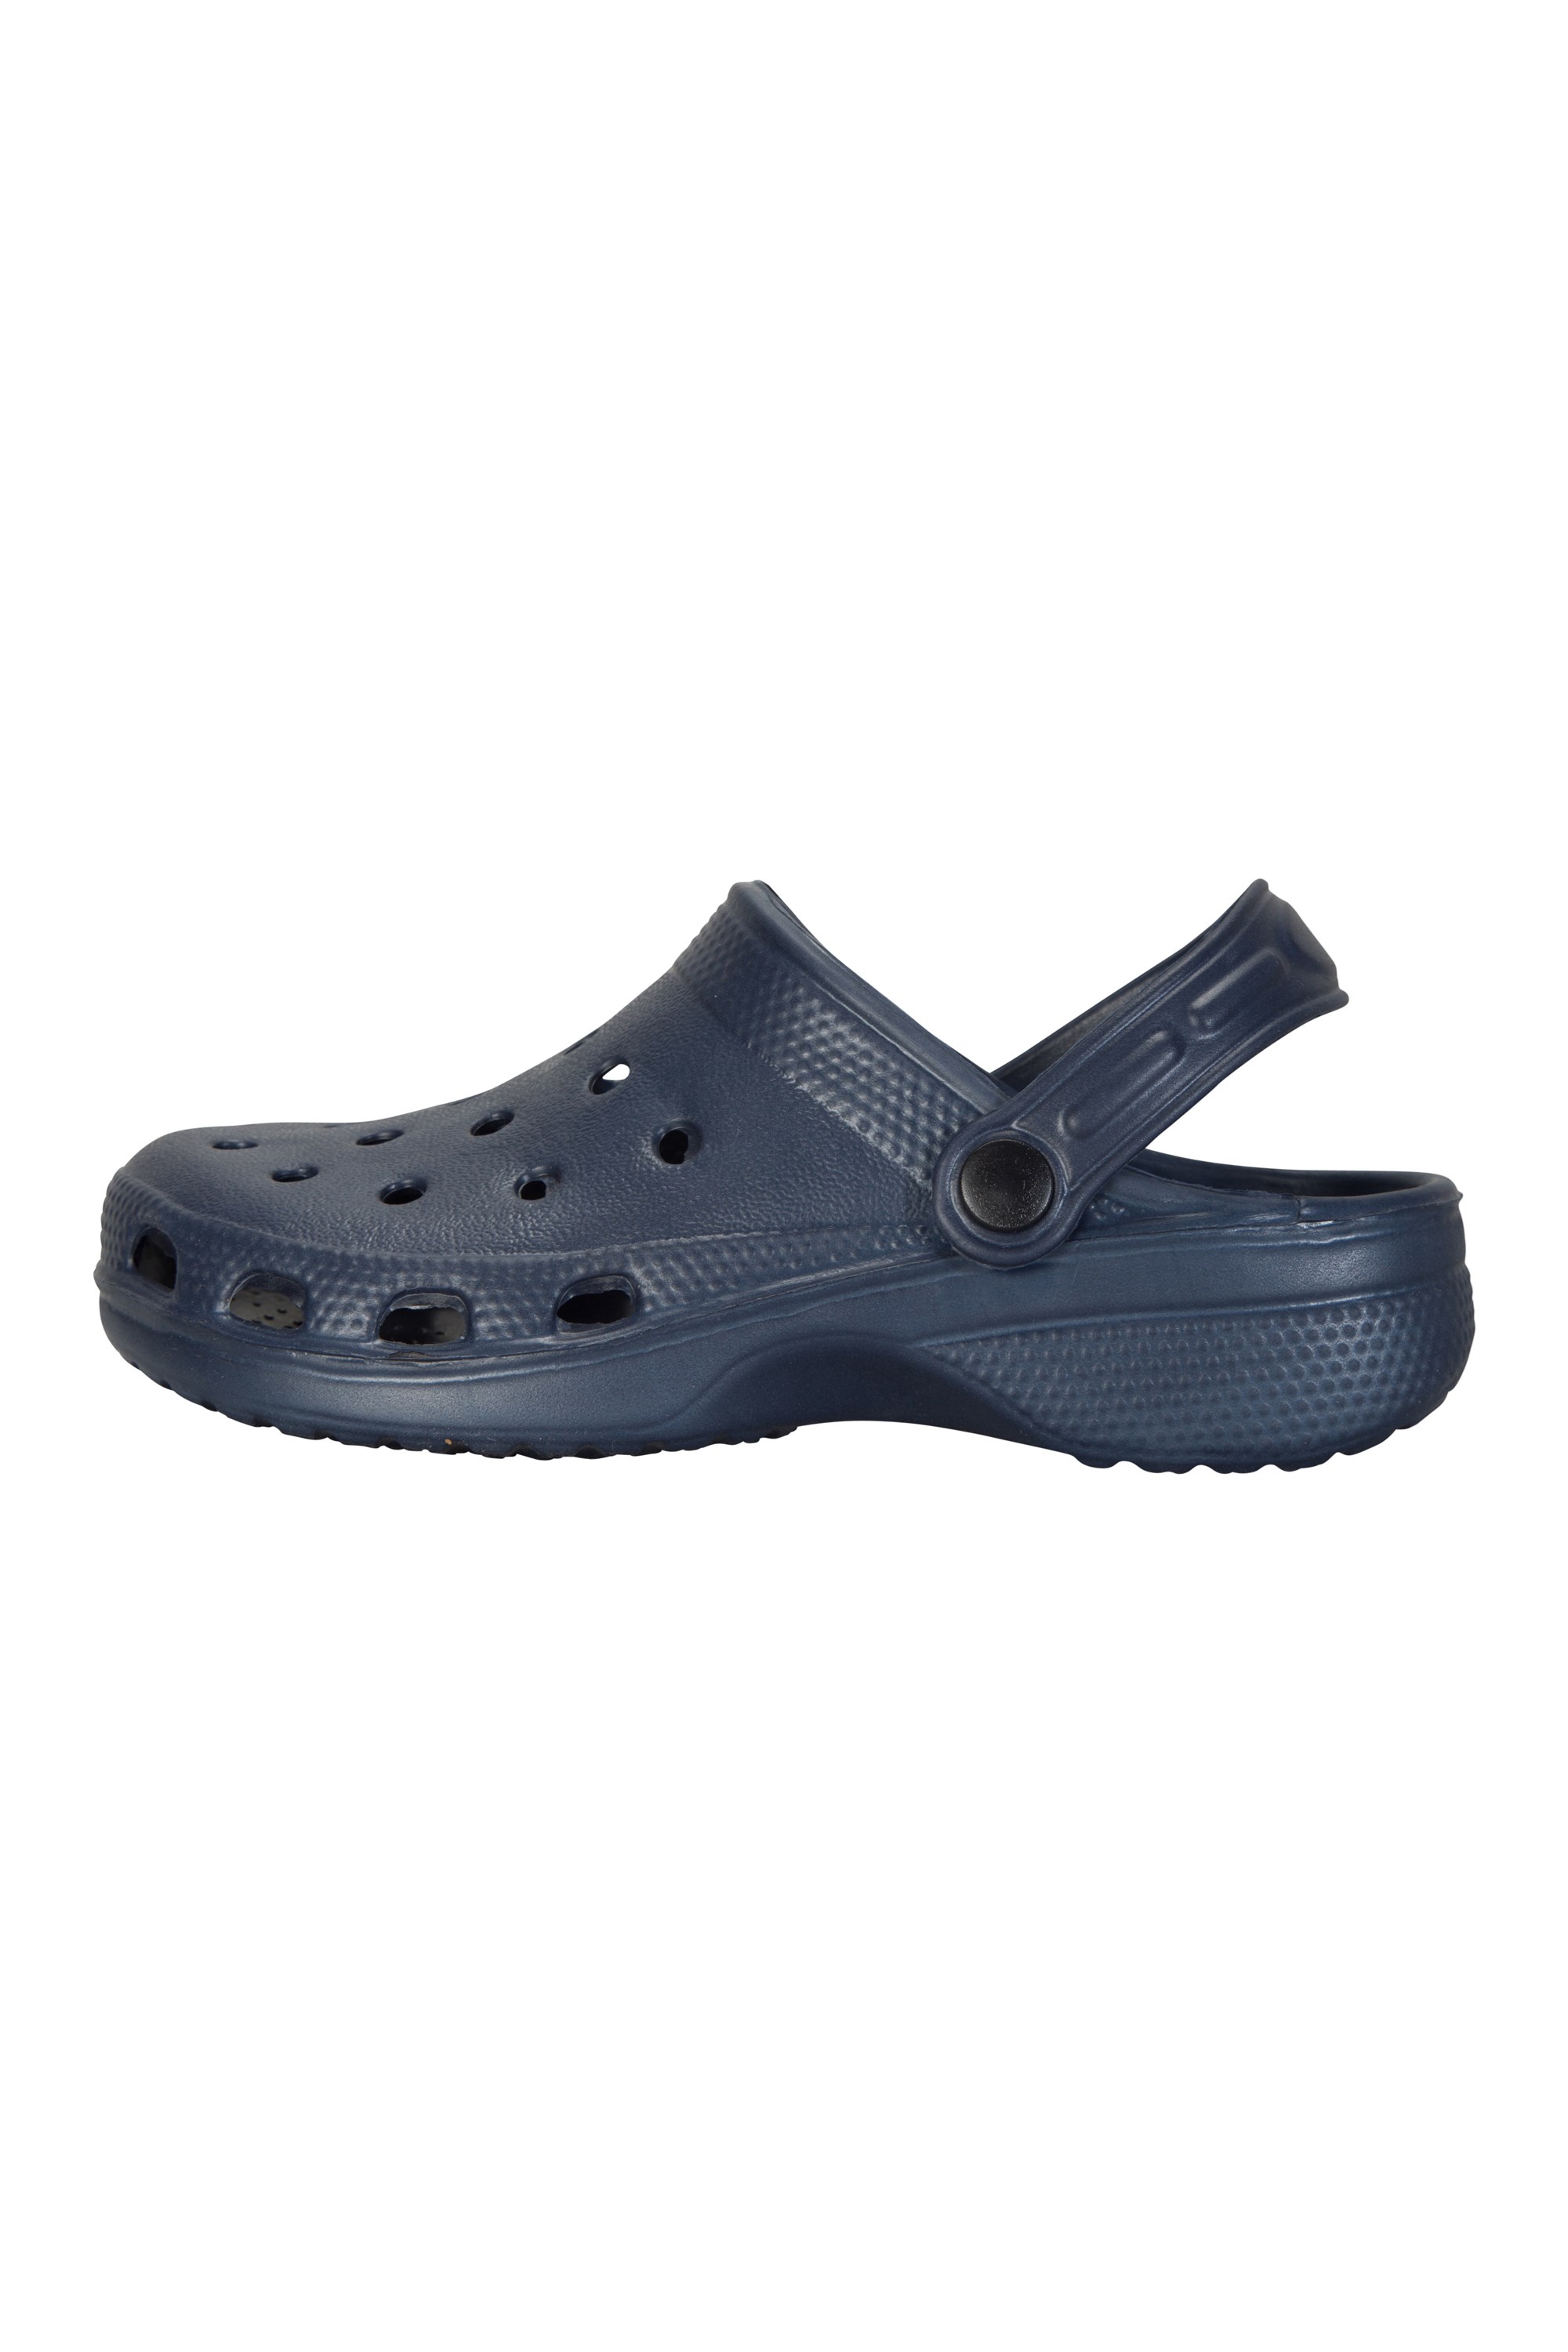 Mountain Warehouse Shark Clogs Lightweight Kids Summer Shoes